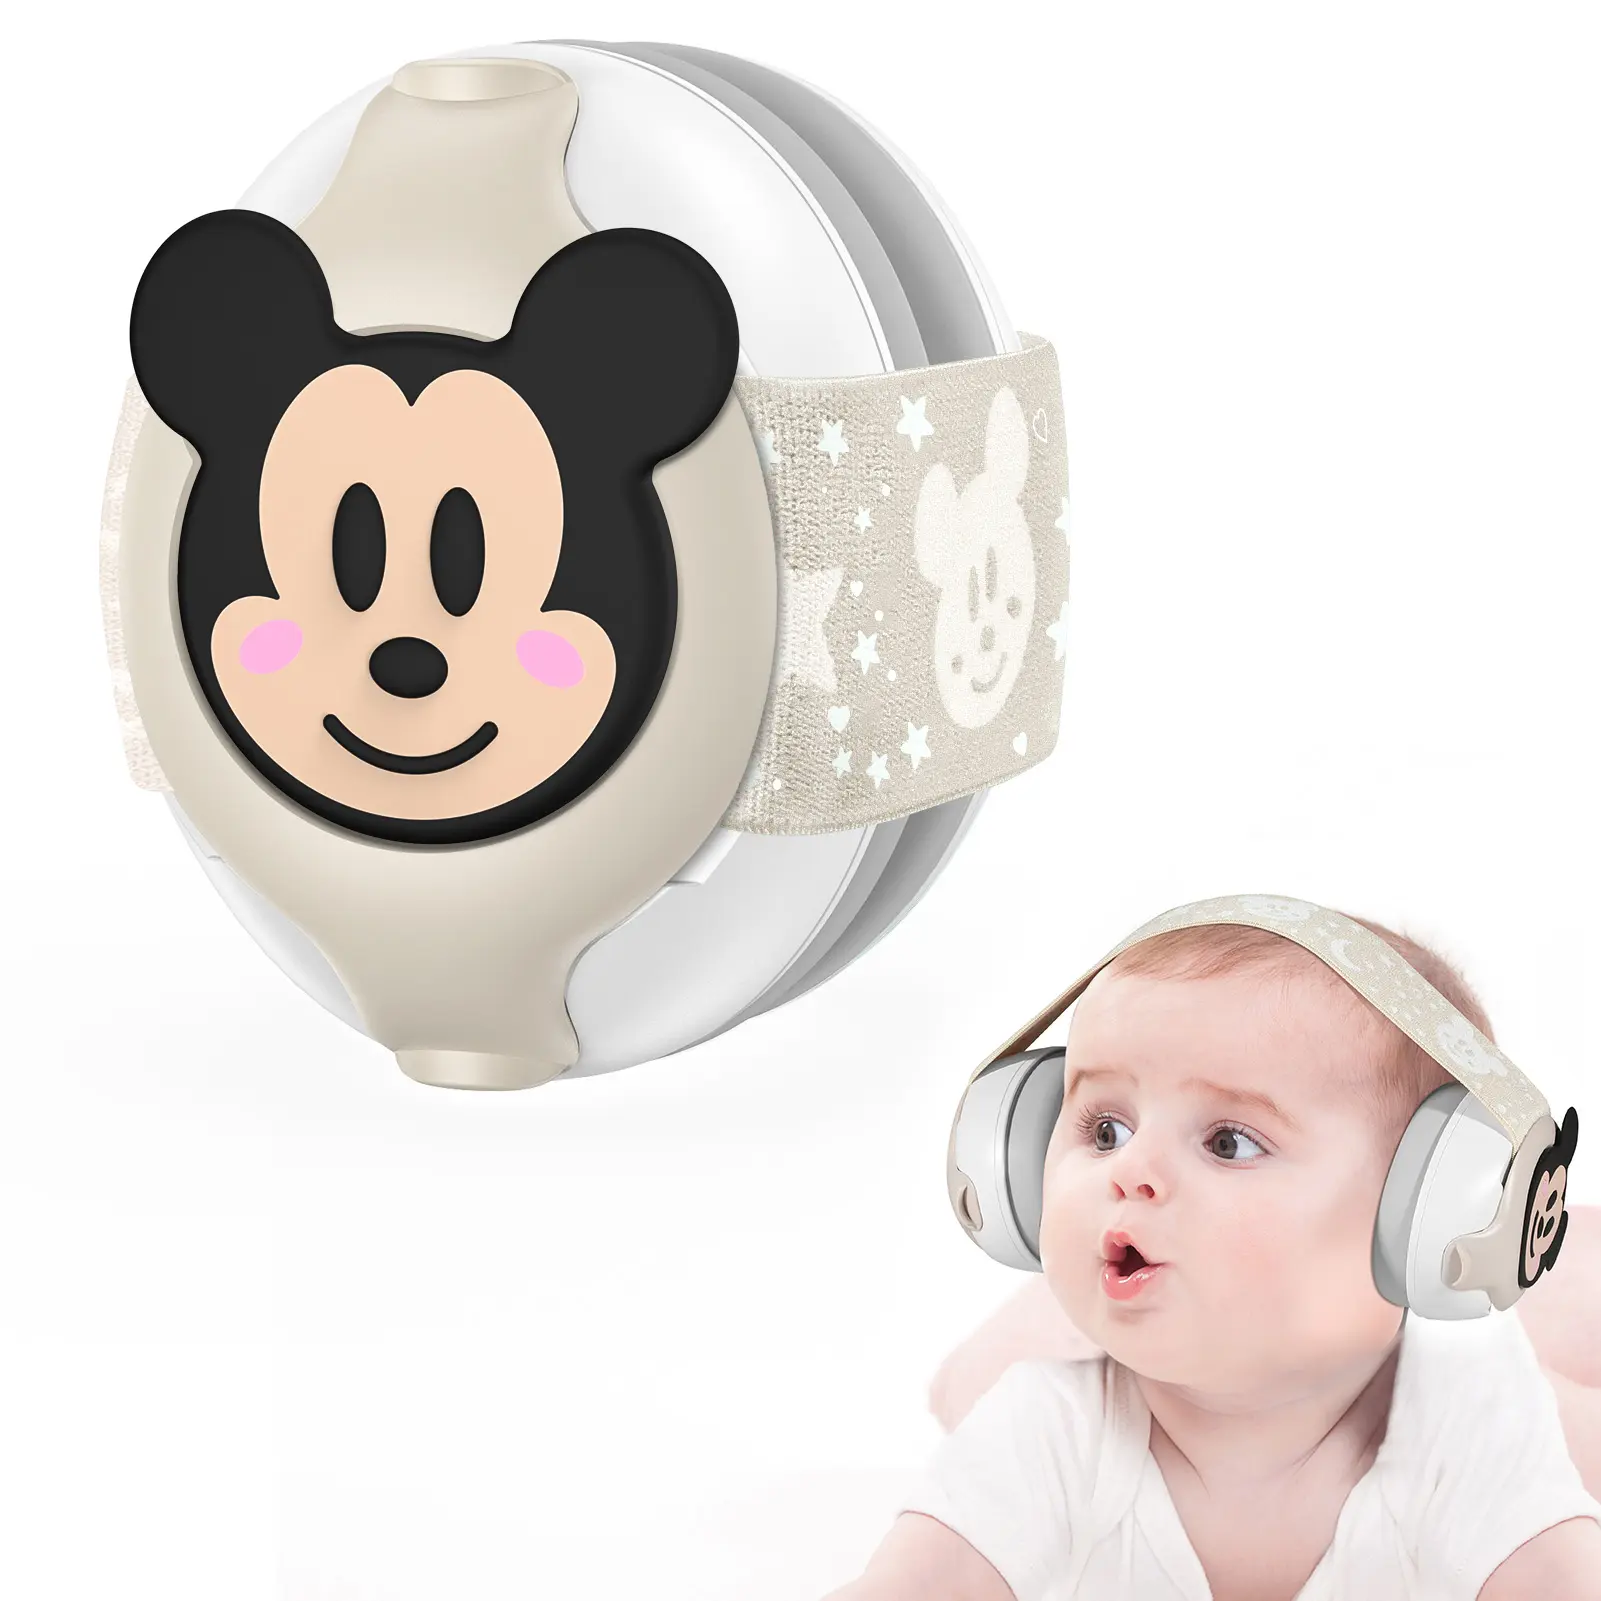 Protetor auricular de bebê à prova de som personalizável, protetor auricular anti-ruído com logotipo personalizado, protetor auricular bonito com desenho animado